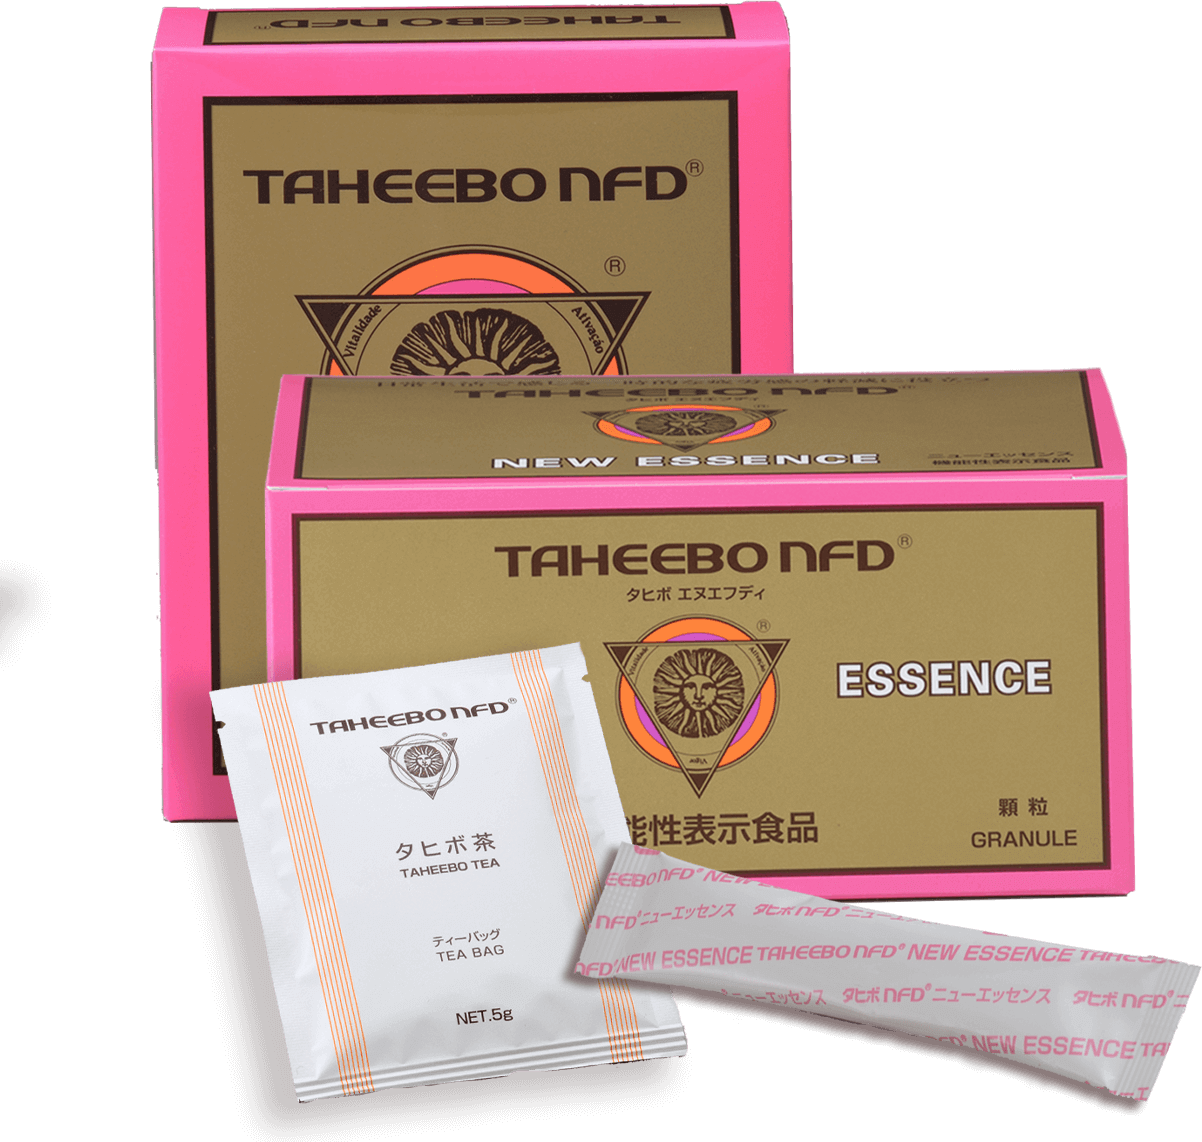 タヒボ茶,タヒボNFDを通販でお求めなら「タヒボe」